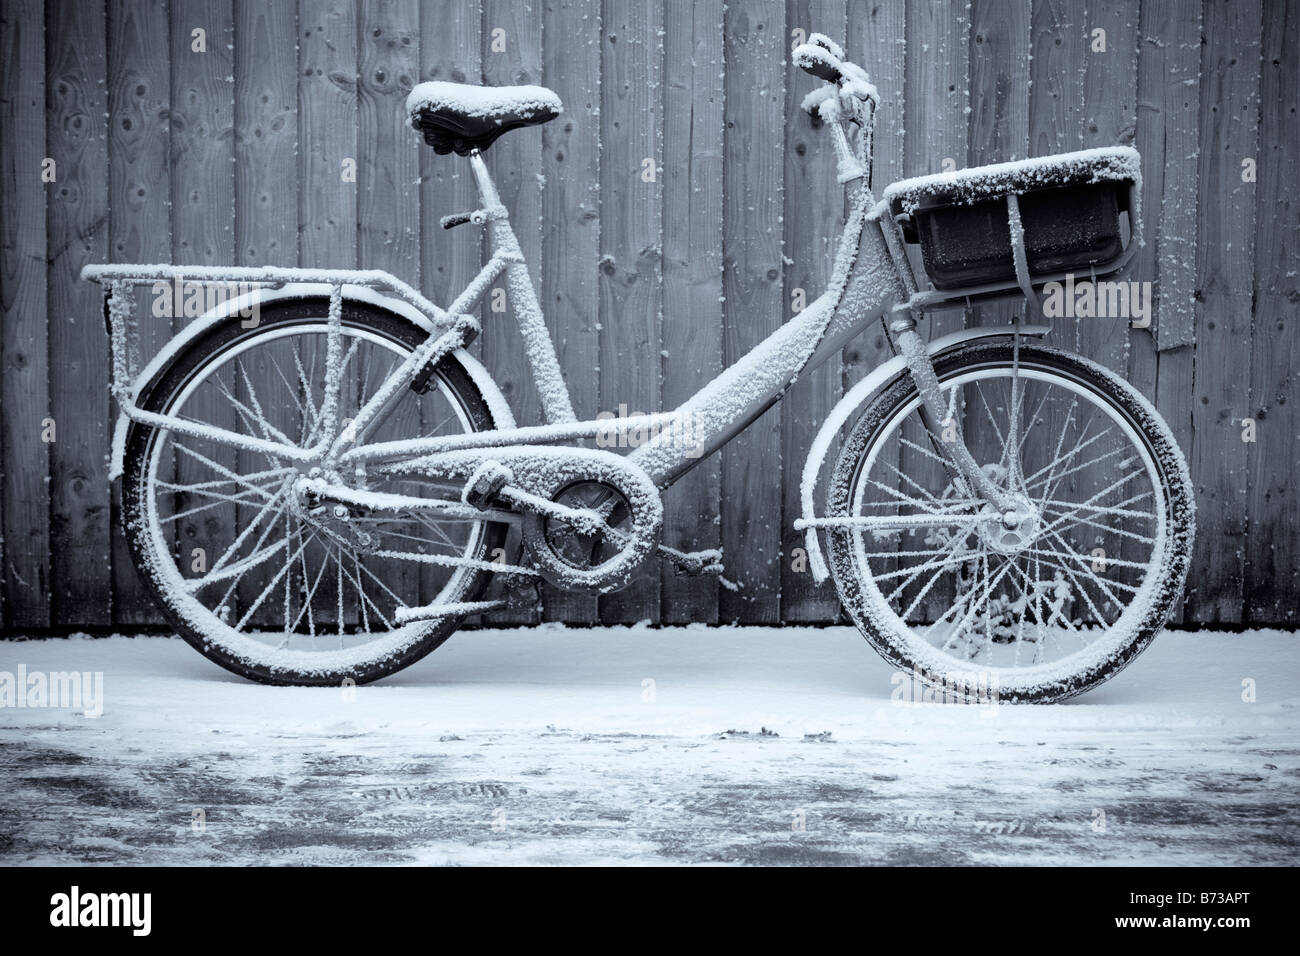 Un británico Royal mail entrega postal bicicleta recostada contra una valla en una inviernos nevados mañana. Foto de stock